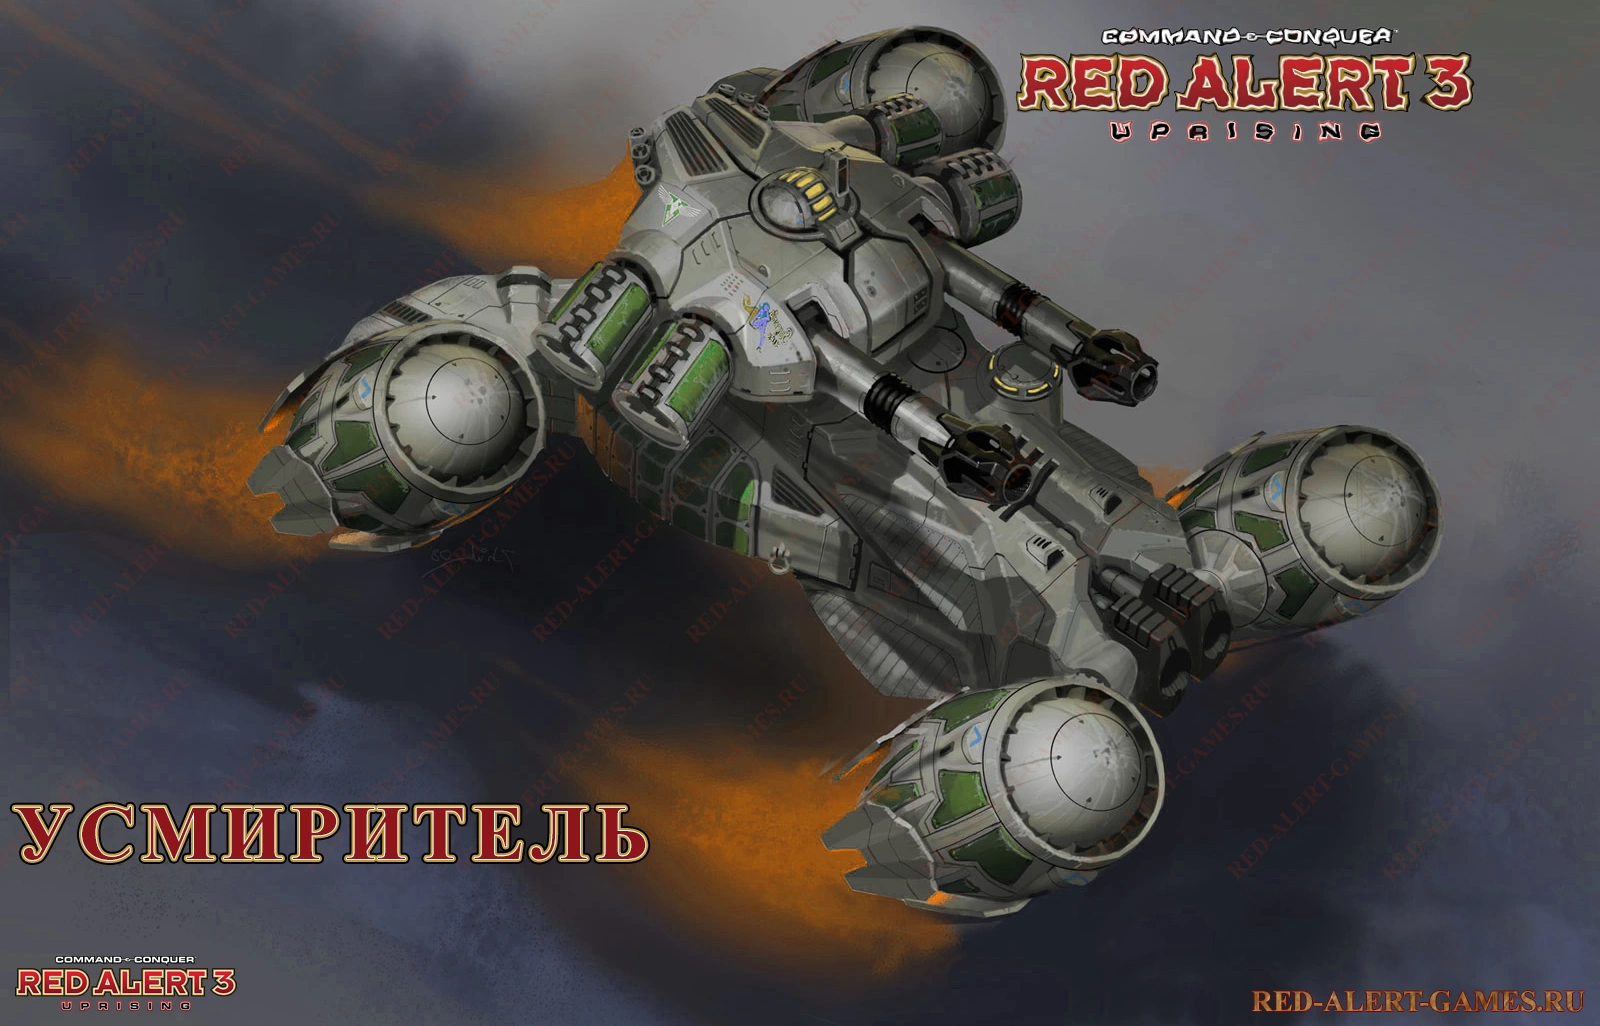 Усмиритель (Pacifier FAV) - Red Alert 3 Uprising Новые войска Альянс